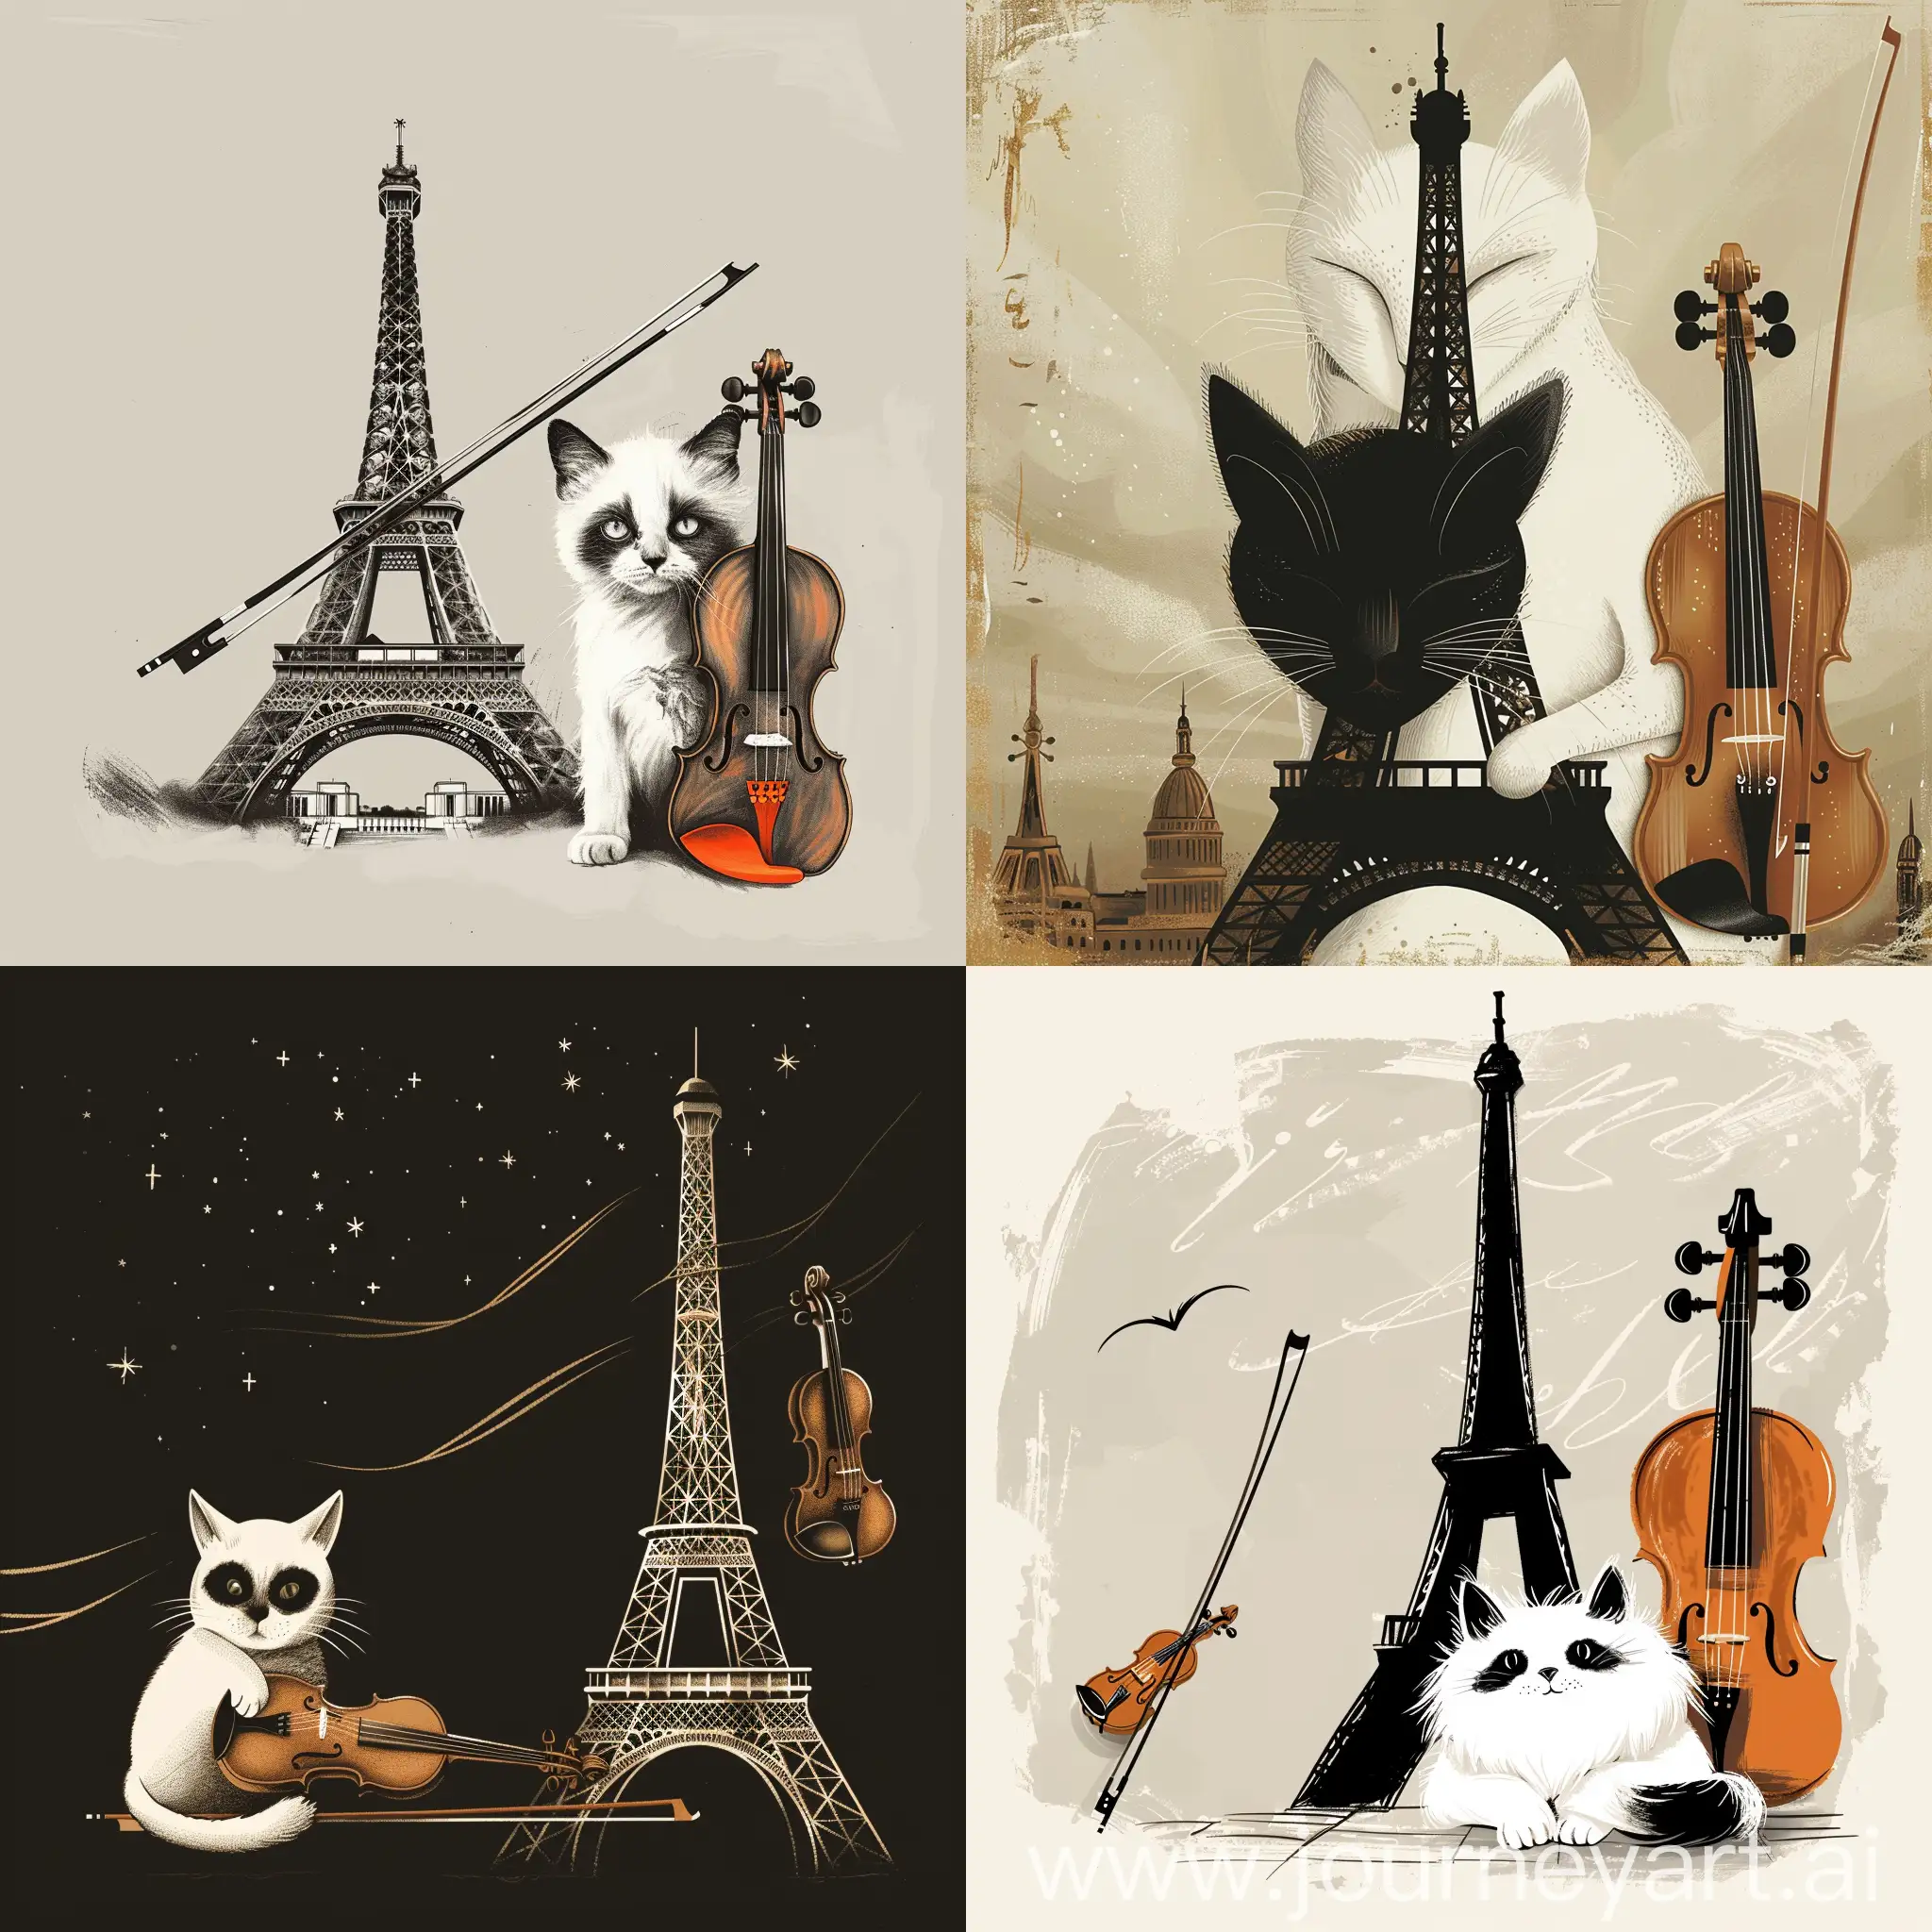 Una imagen de la torre eifiel como ilustración , un gato blanco y la cara negra, un violín al lado